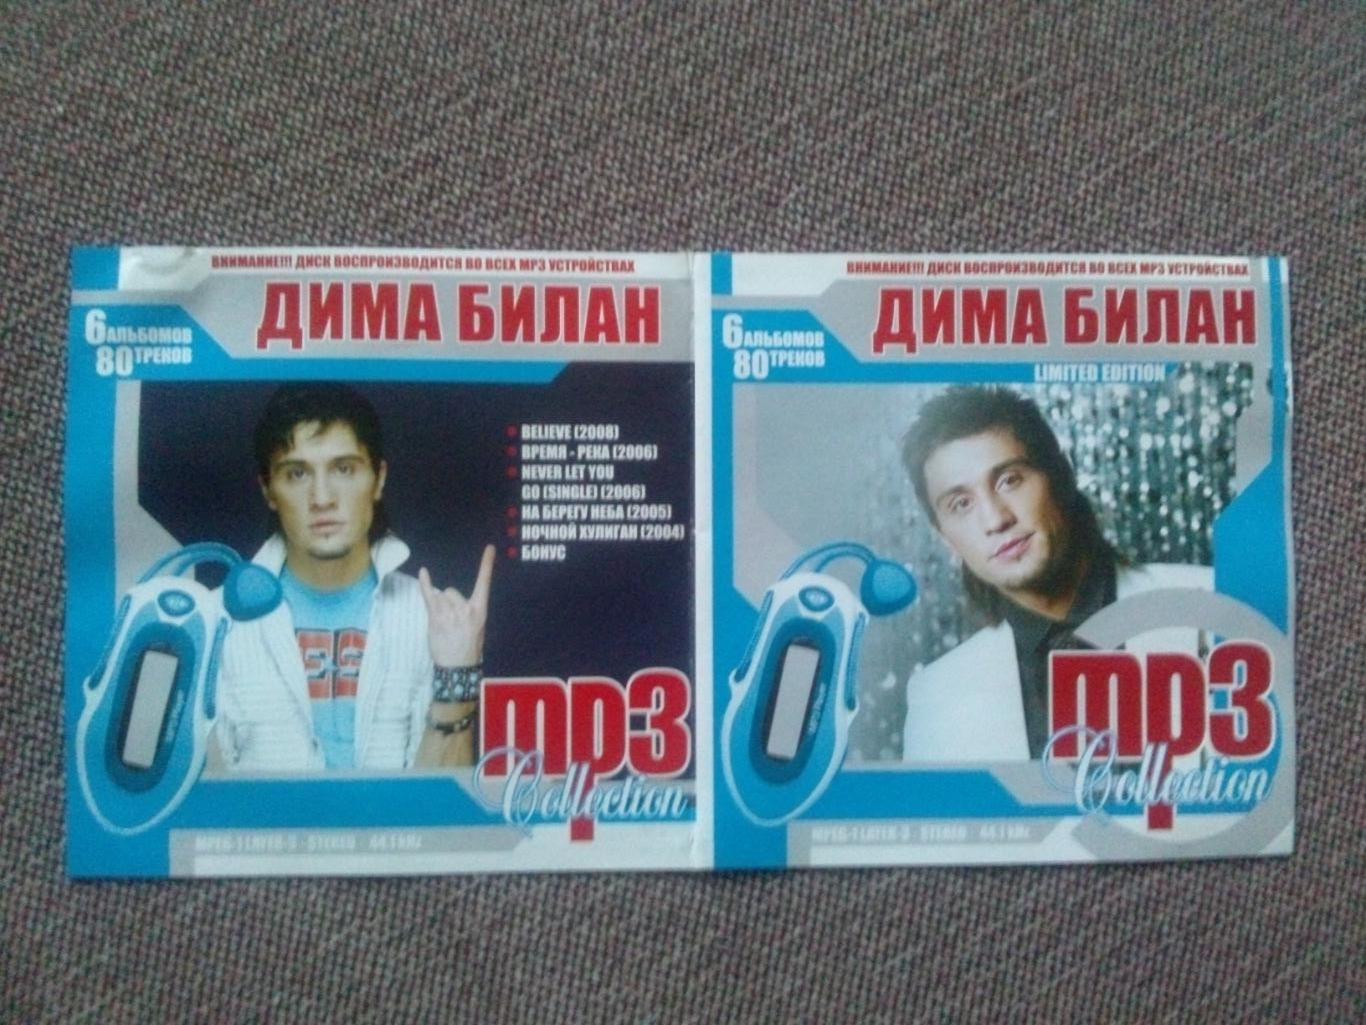 MP - 3 CD диск : Дима Билан 2004 - 2008 гг. (5 альбомов) Российская поп - музыка 2